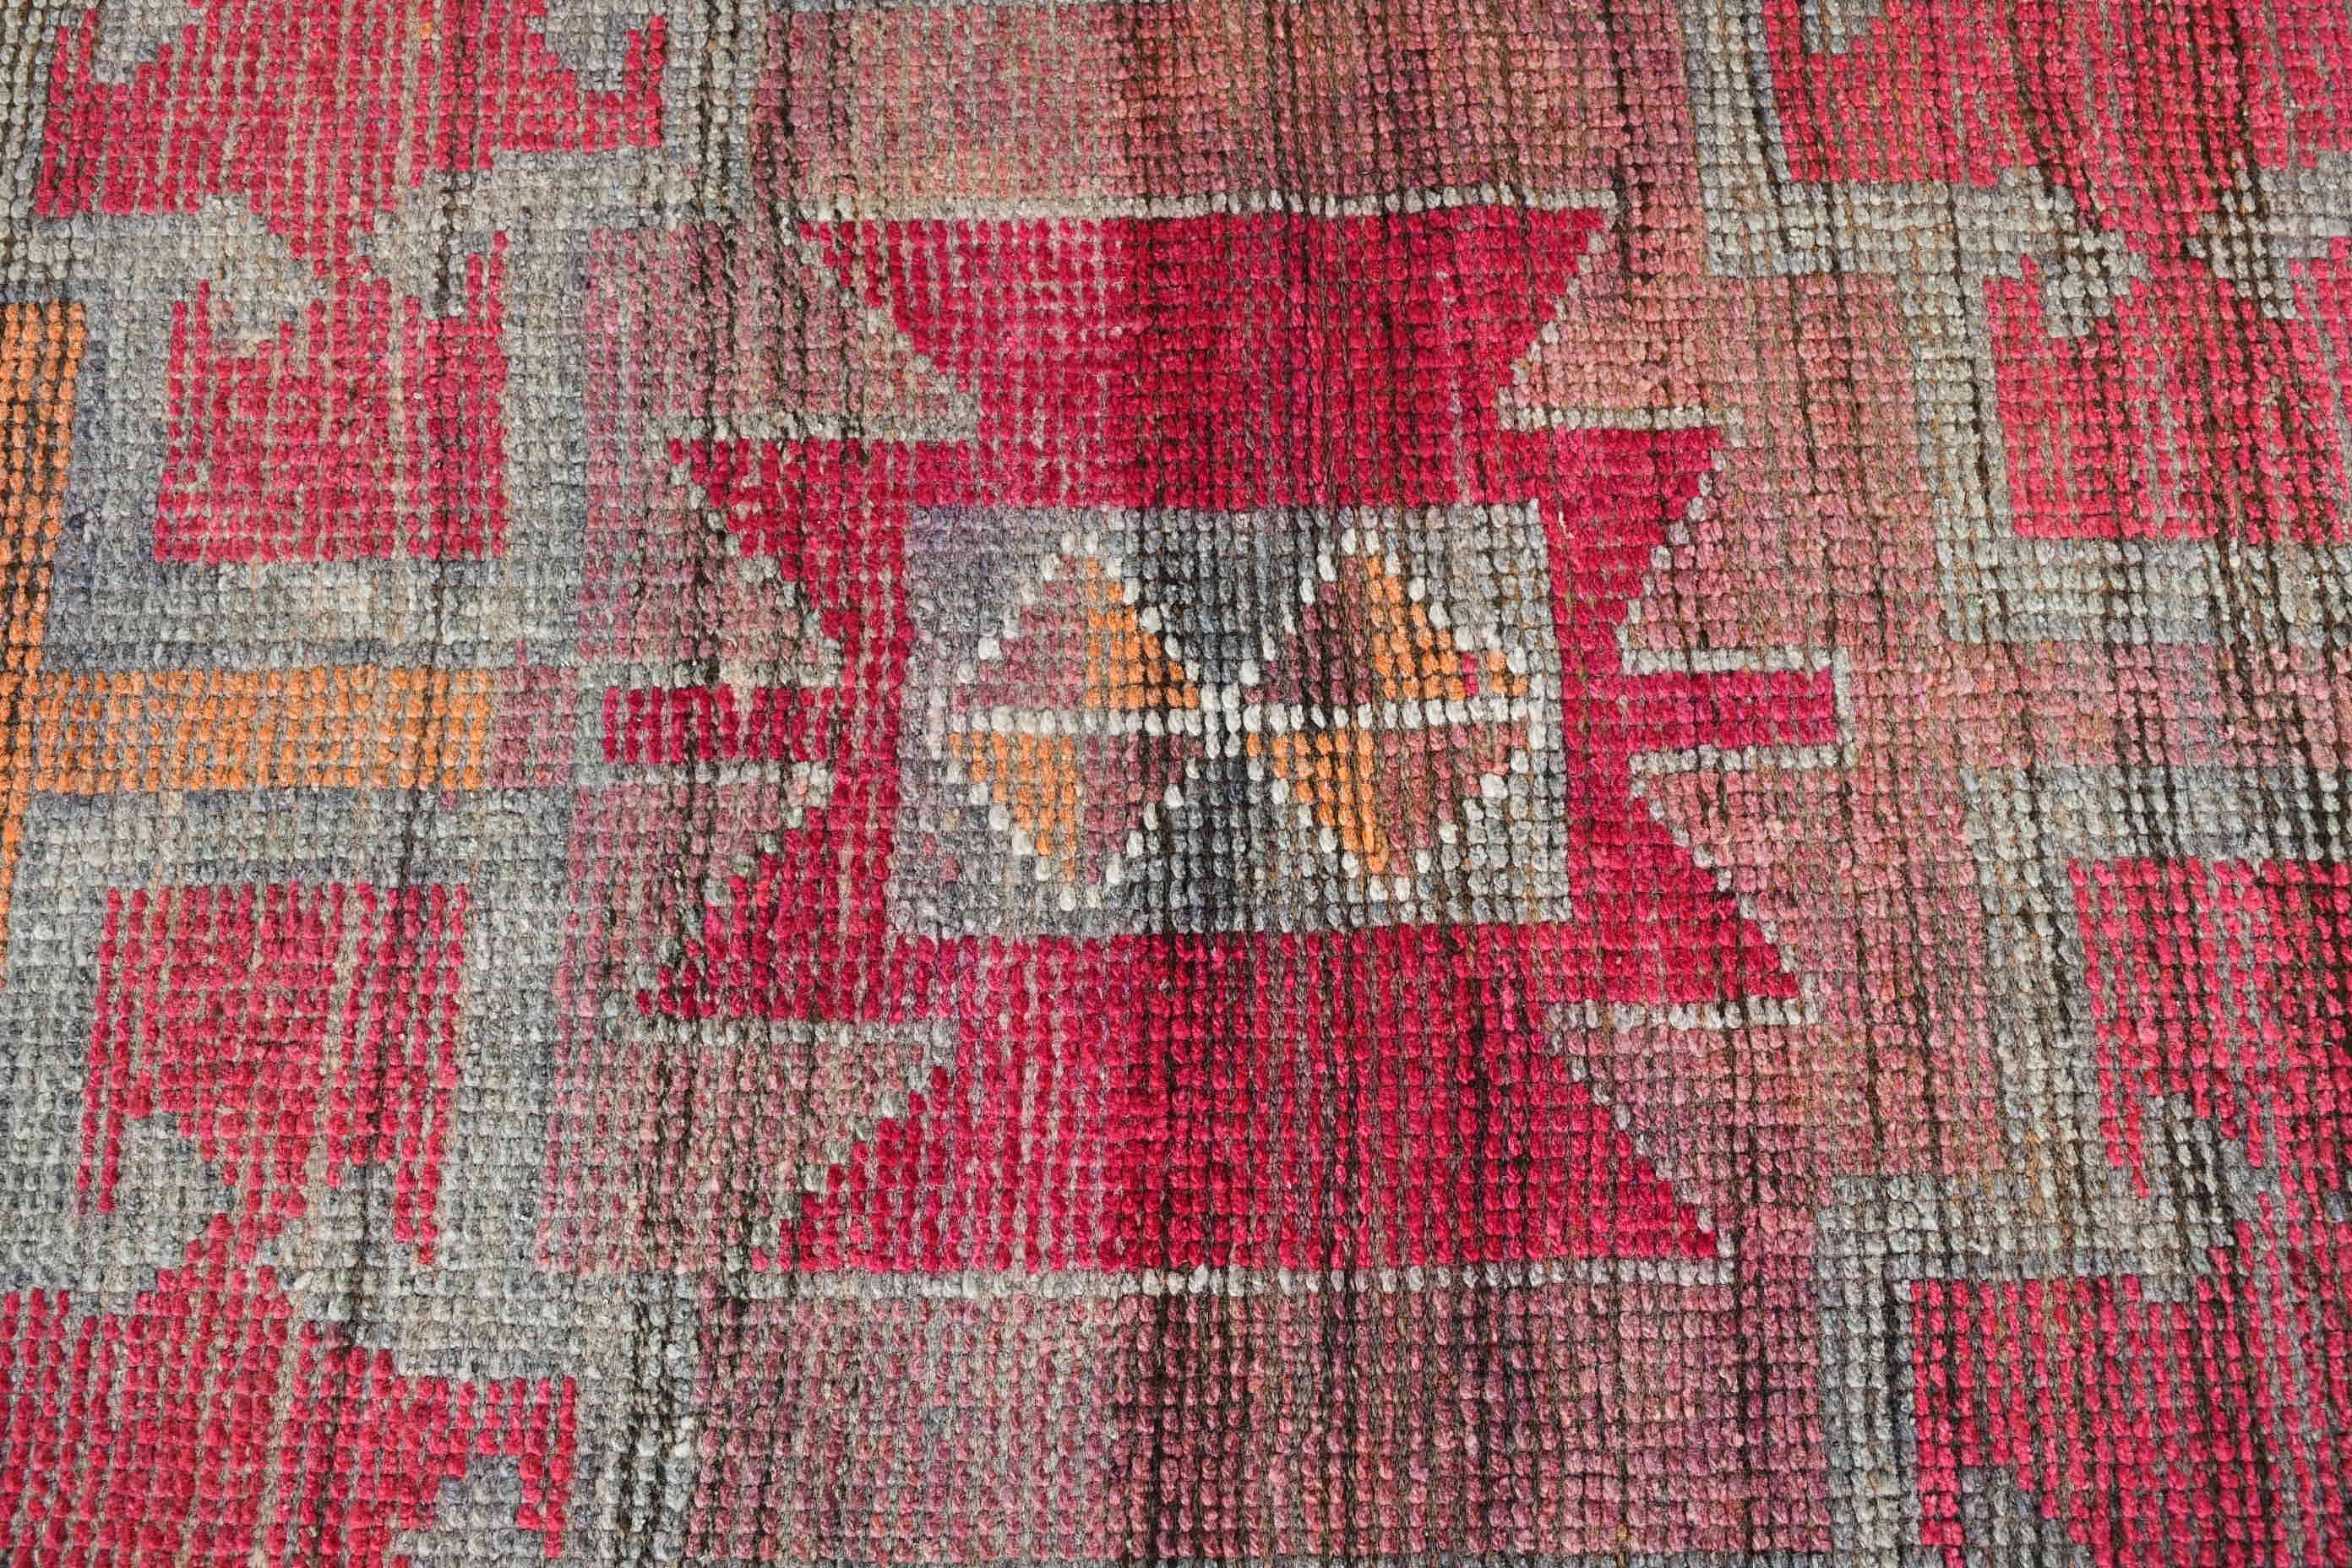 Stair Rug, Kitchen Rug, Moroccan Rug, Rugs for Runner, Vintage Rugs, Cool Rugs, Turkish Rugs, 2.7x8.5 ft Runner Rug, Pink Oriental Rug